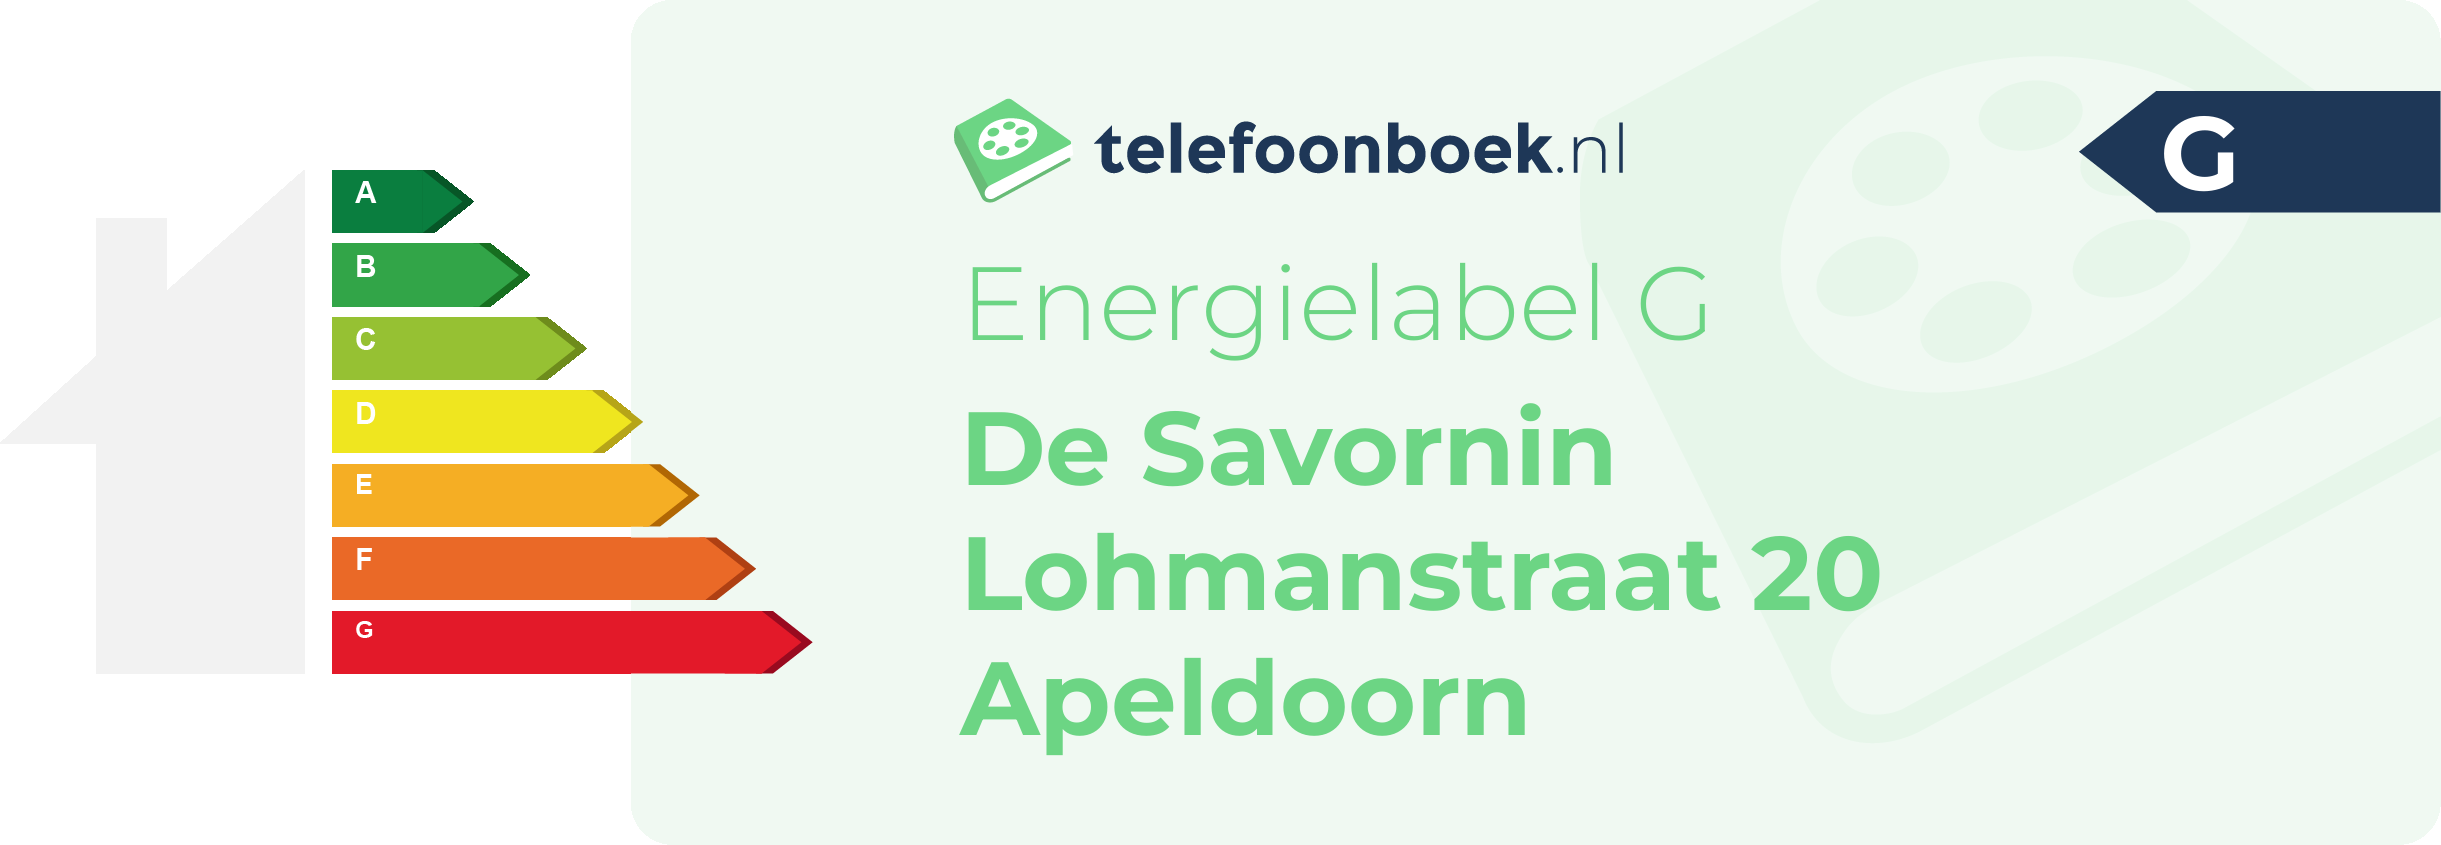 Energielabel De Savornin Lohmanstraat 20 Apeldoorn